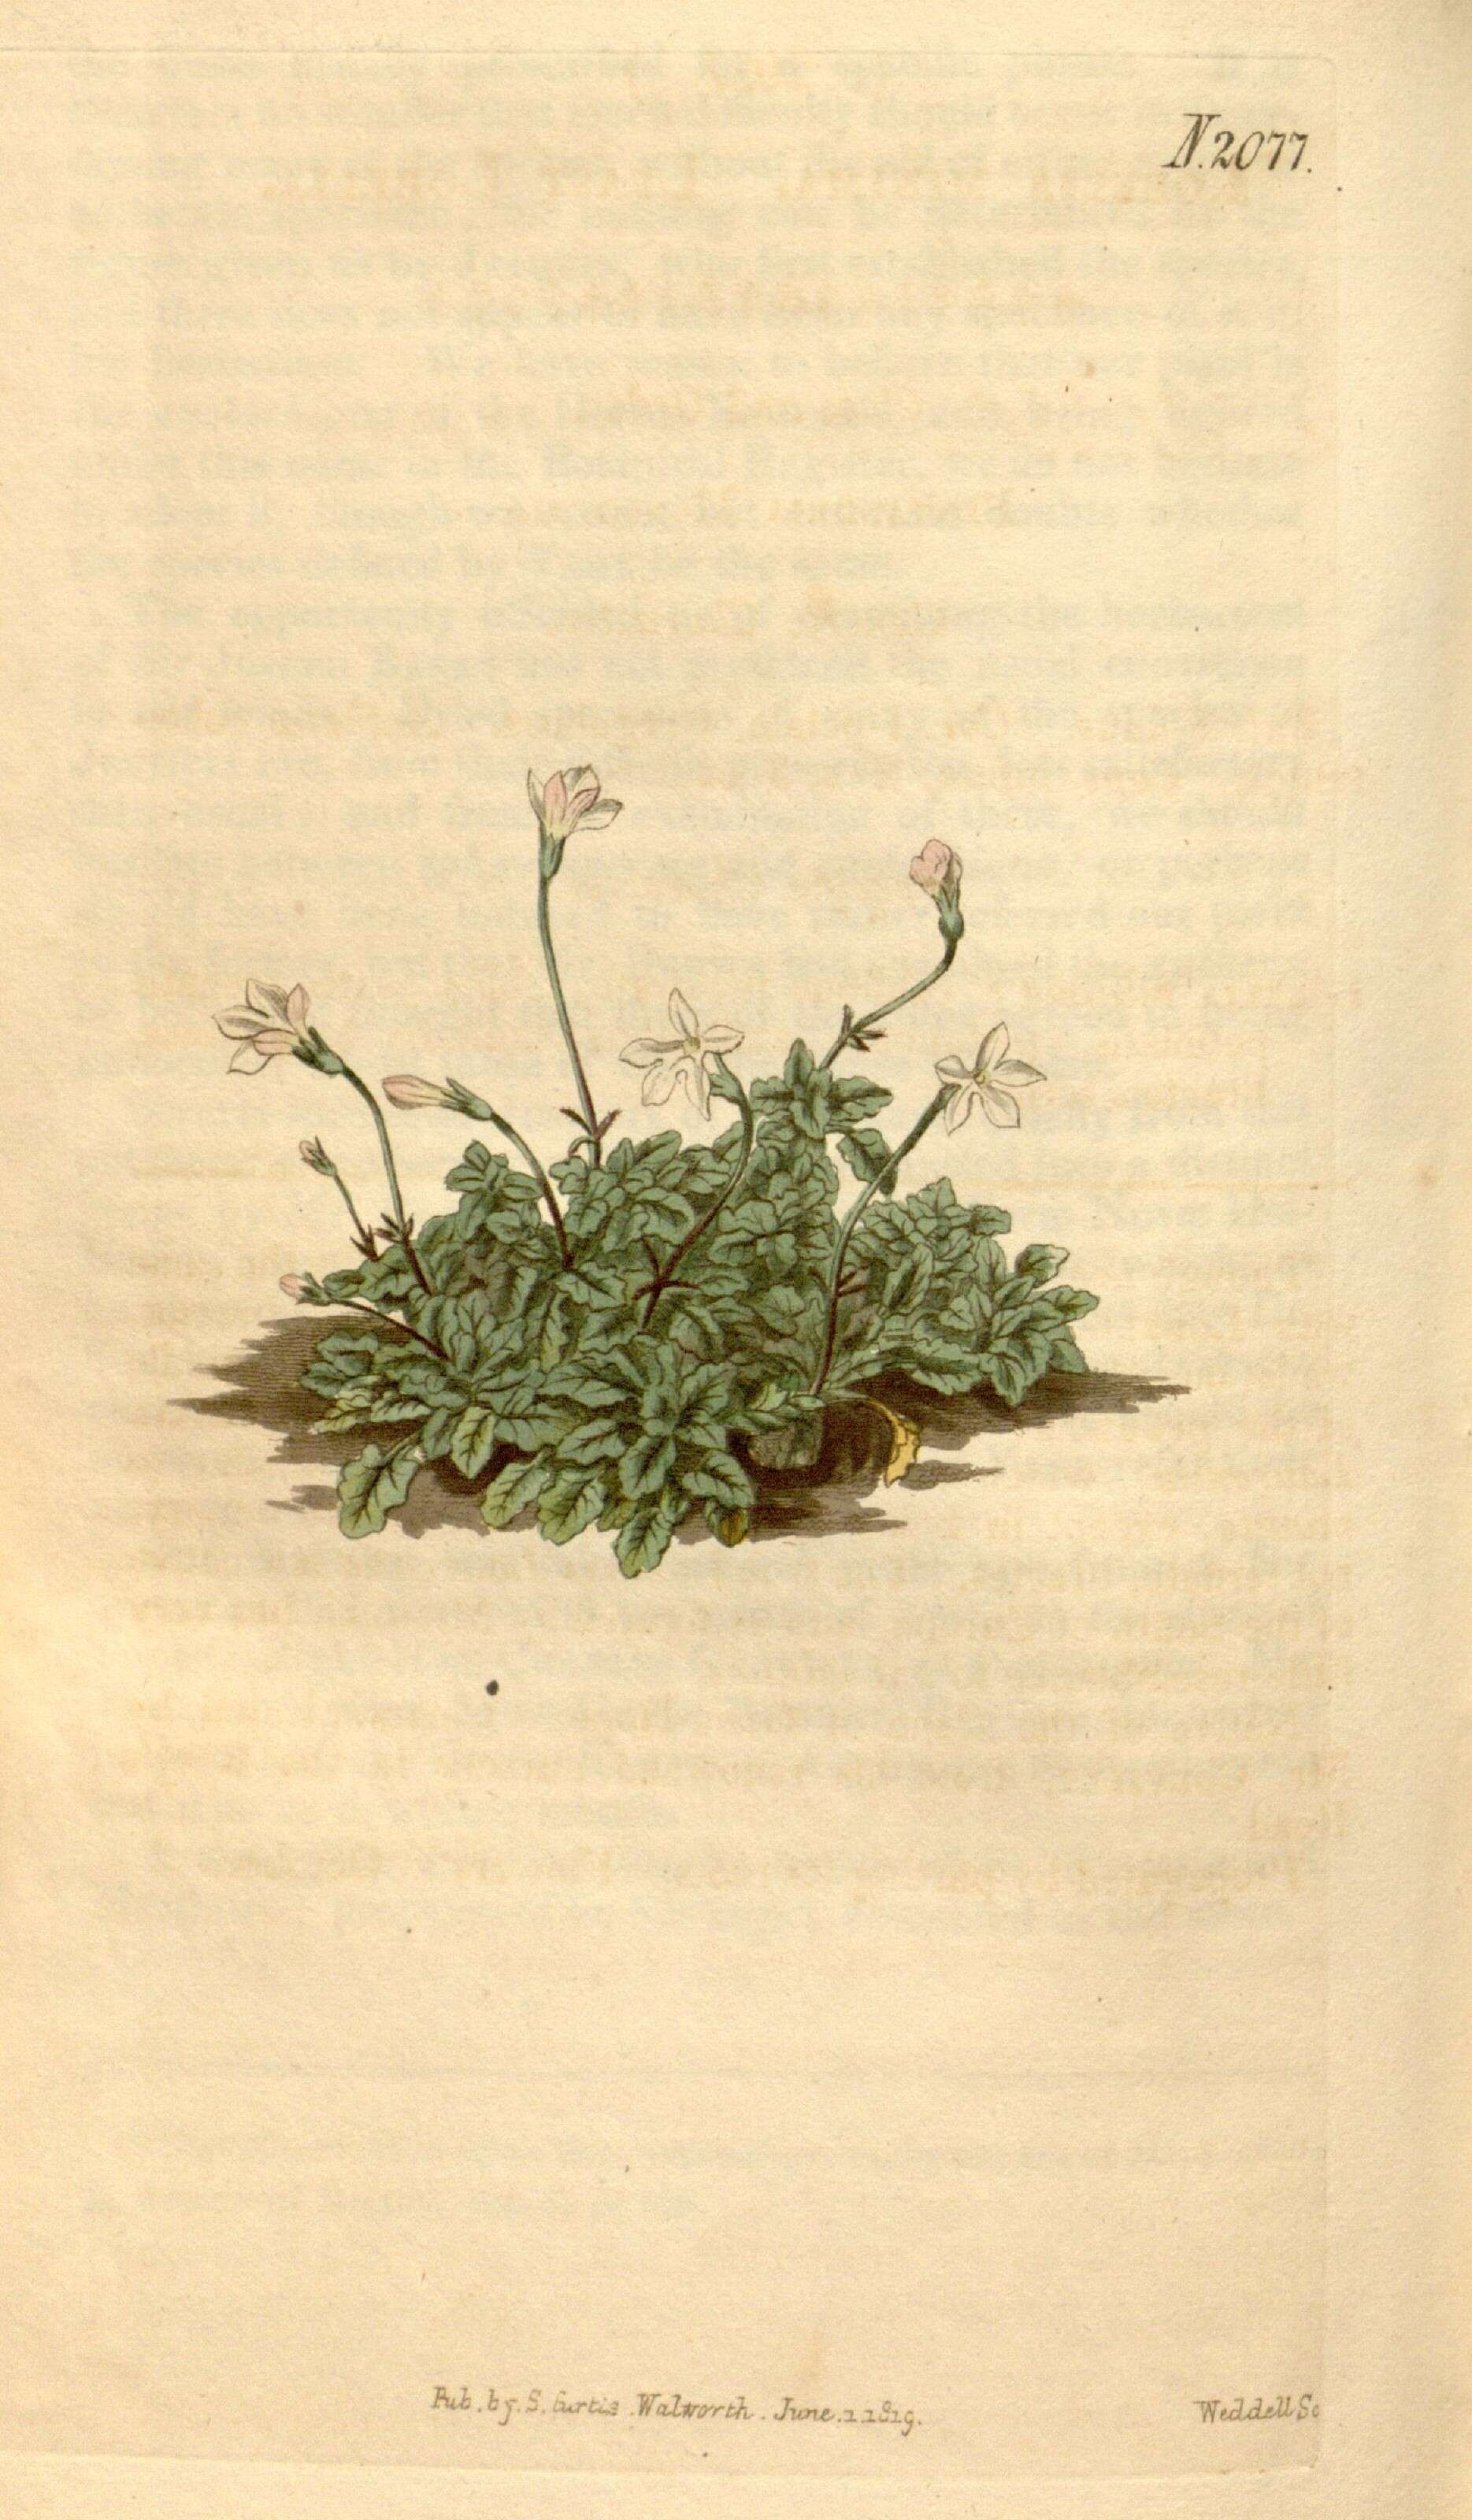 Image of bellflowers